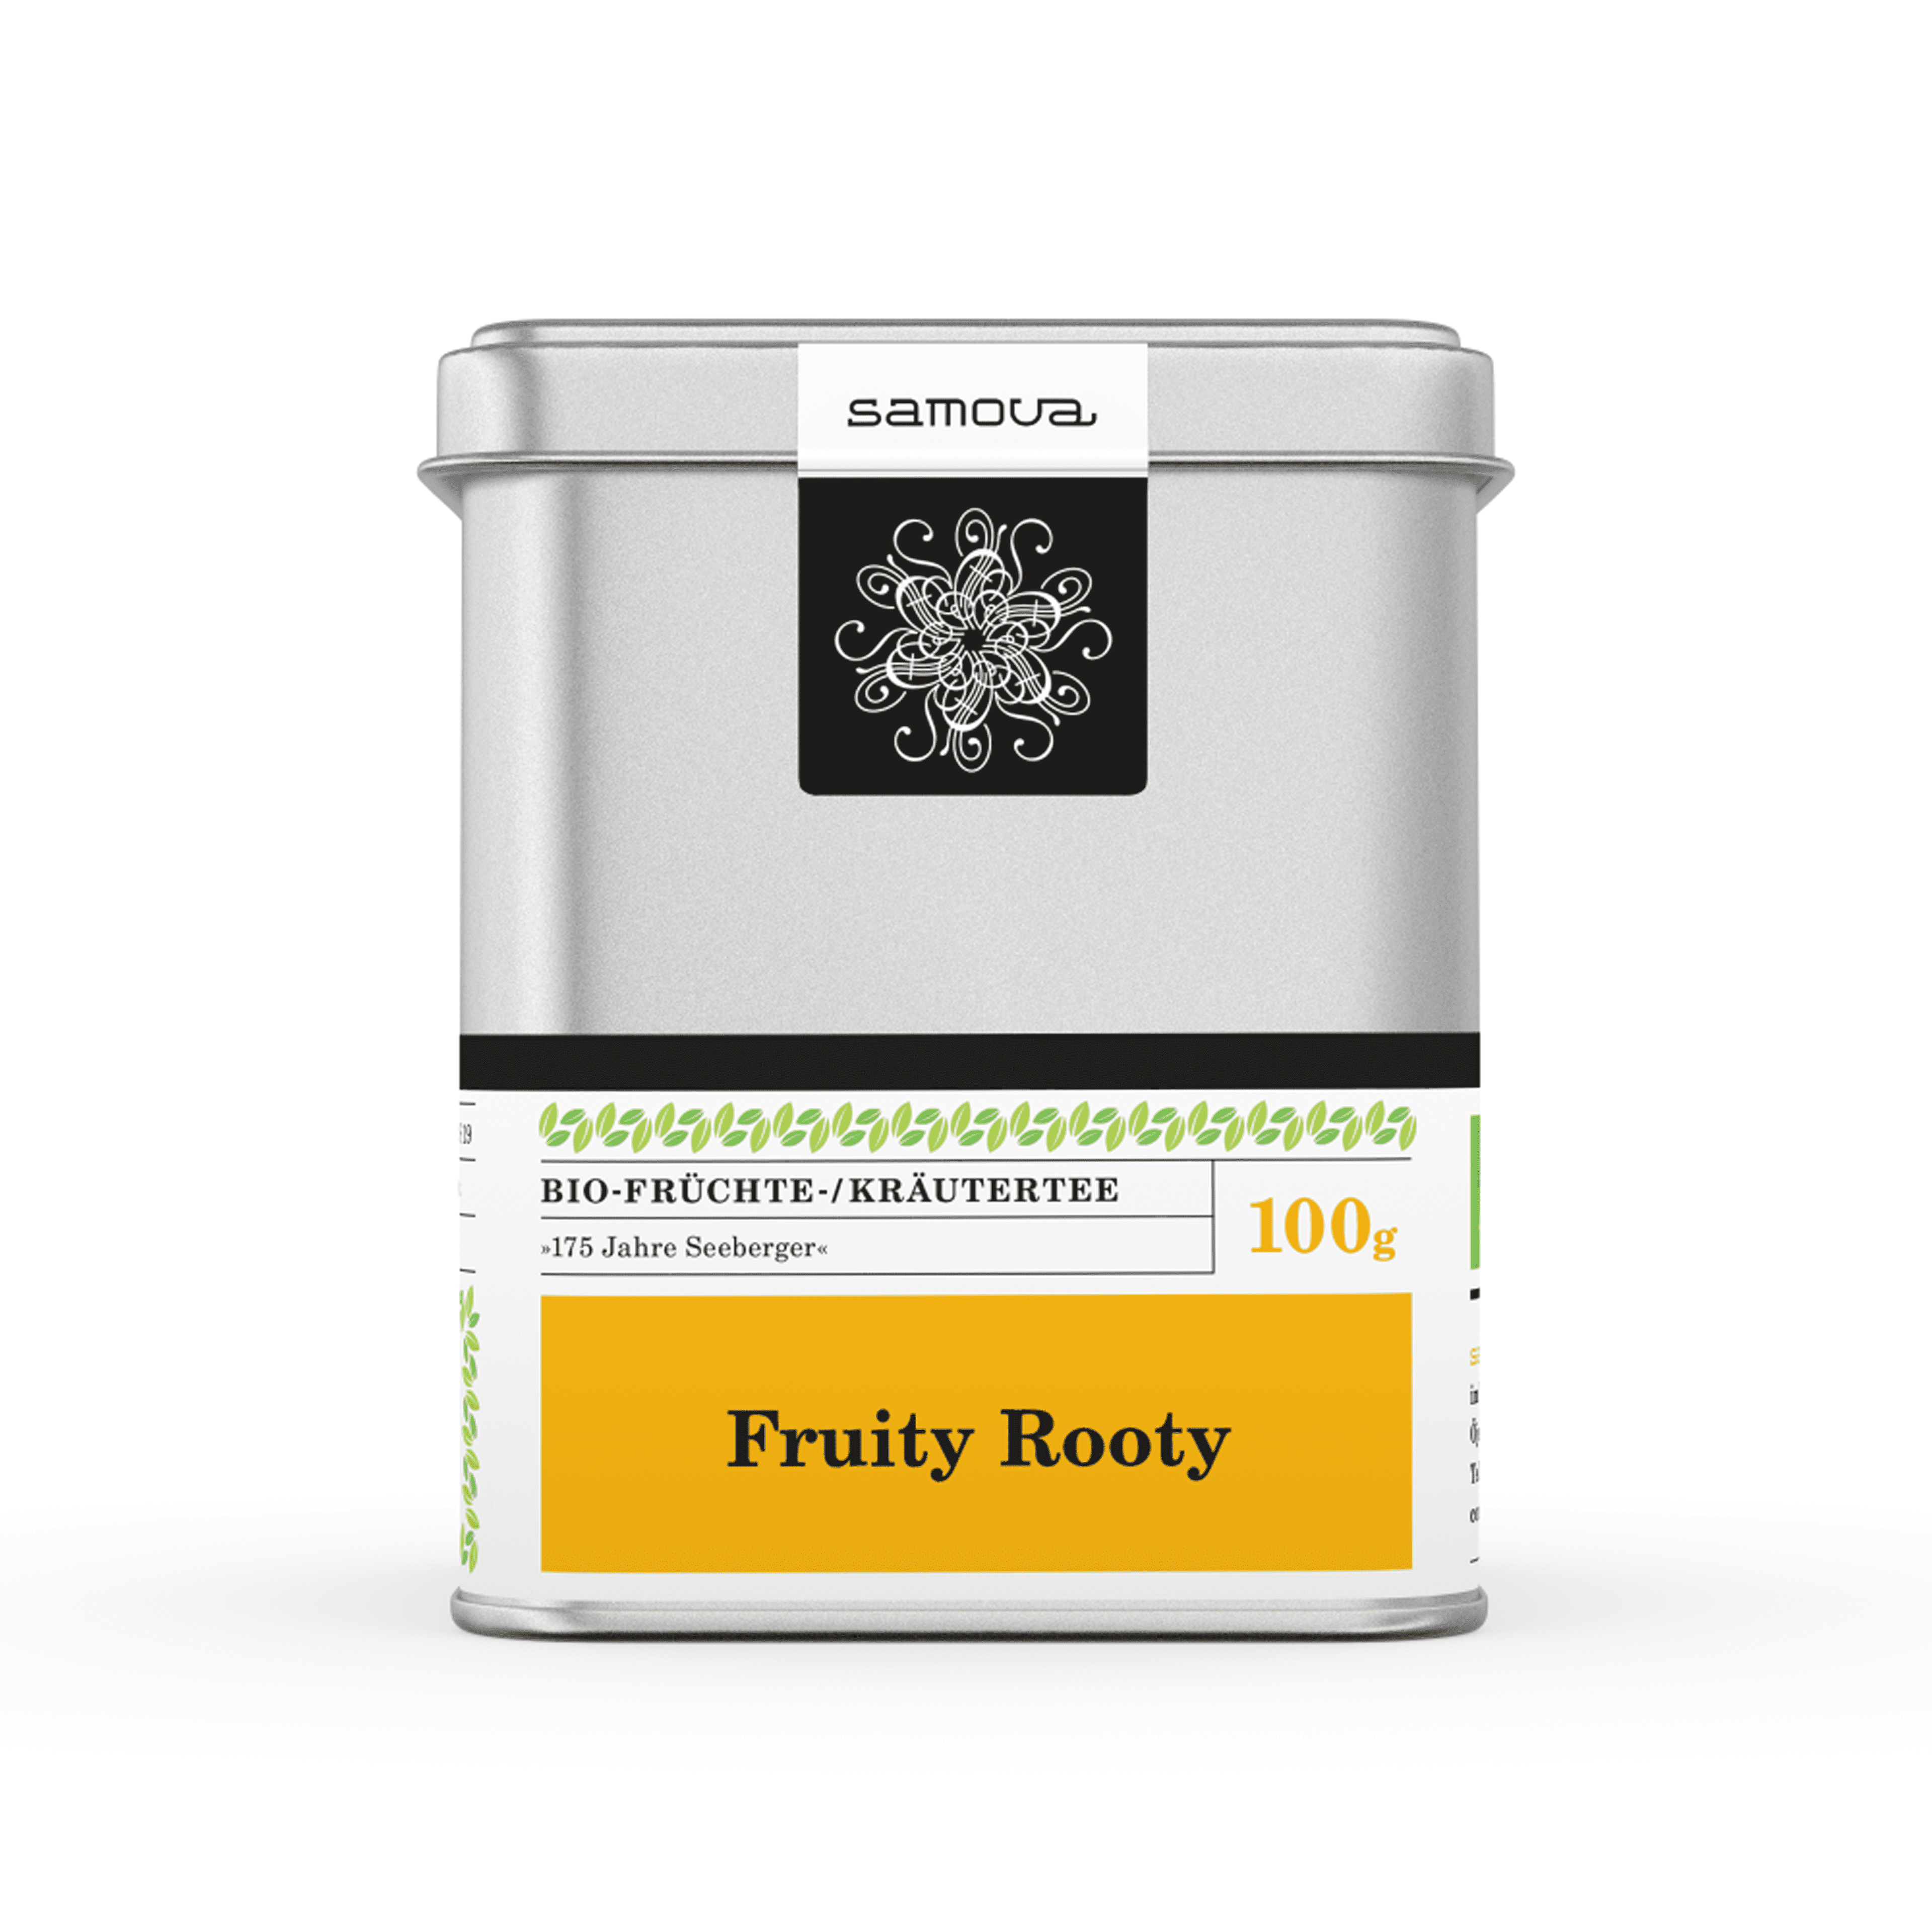 Dåse med Fruity Rooty te